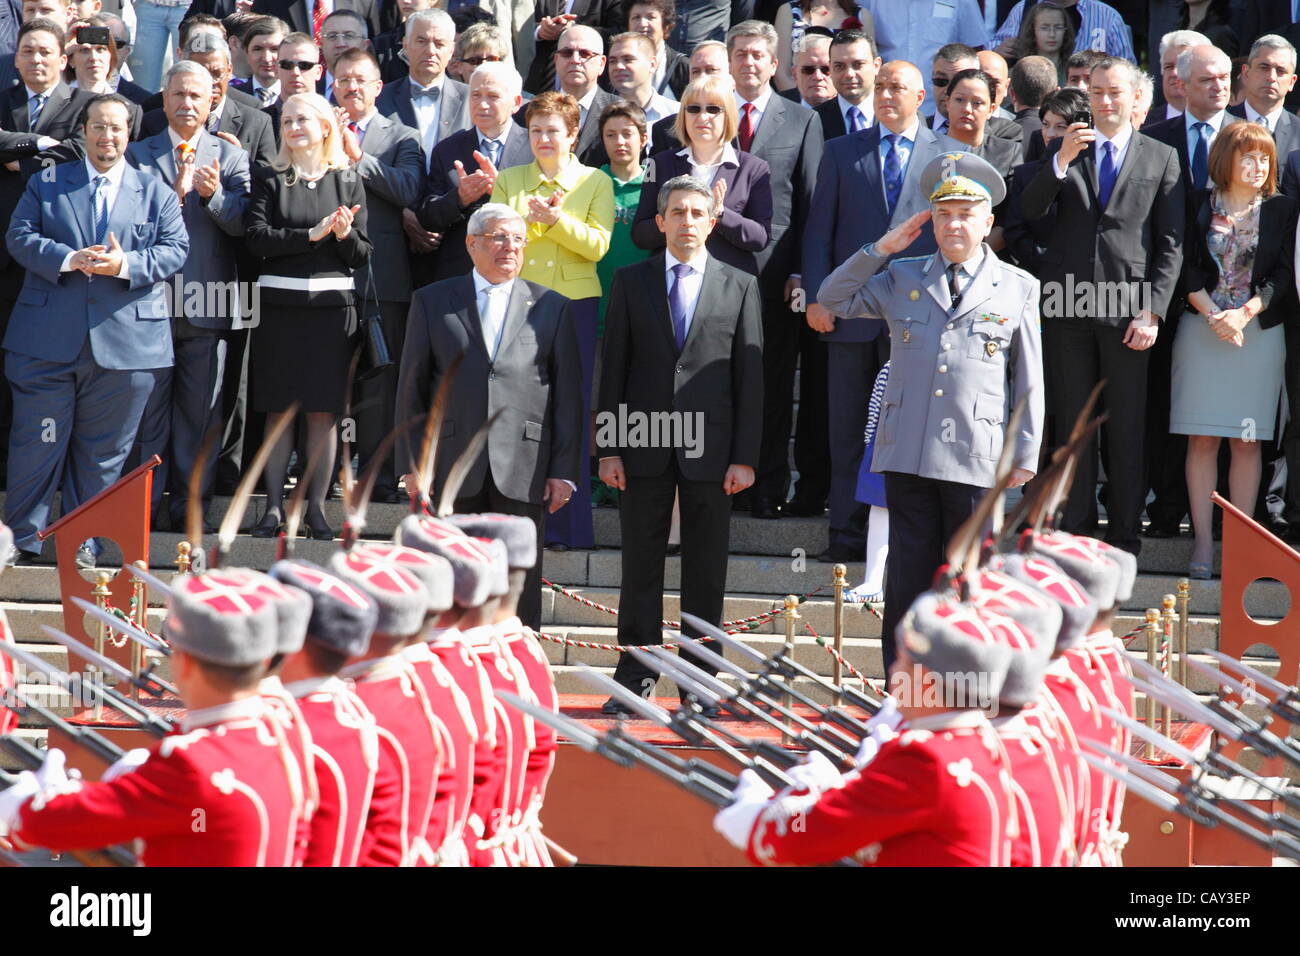 La Garde nationale bulgare dans l'uniforme de cérémonie défilent le Past Président Plevneliev, le ministre de la défense Anyu Angelov et chef du personnel Atanas Samandov LtGen. Sofia, Bulgarie, 6 mai 2012 Banque D'Images